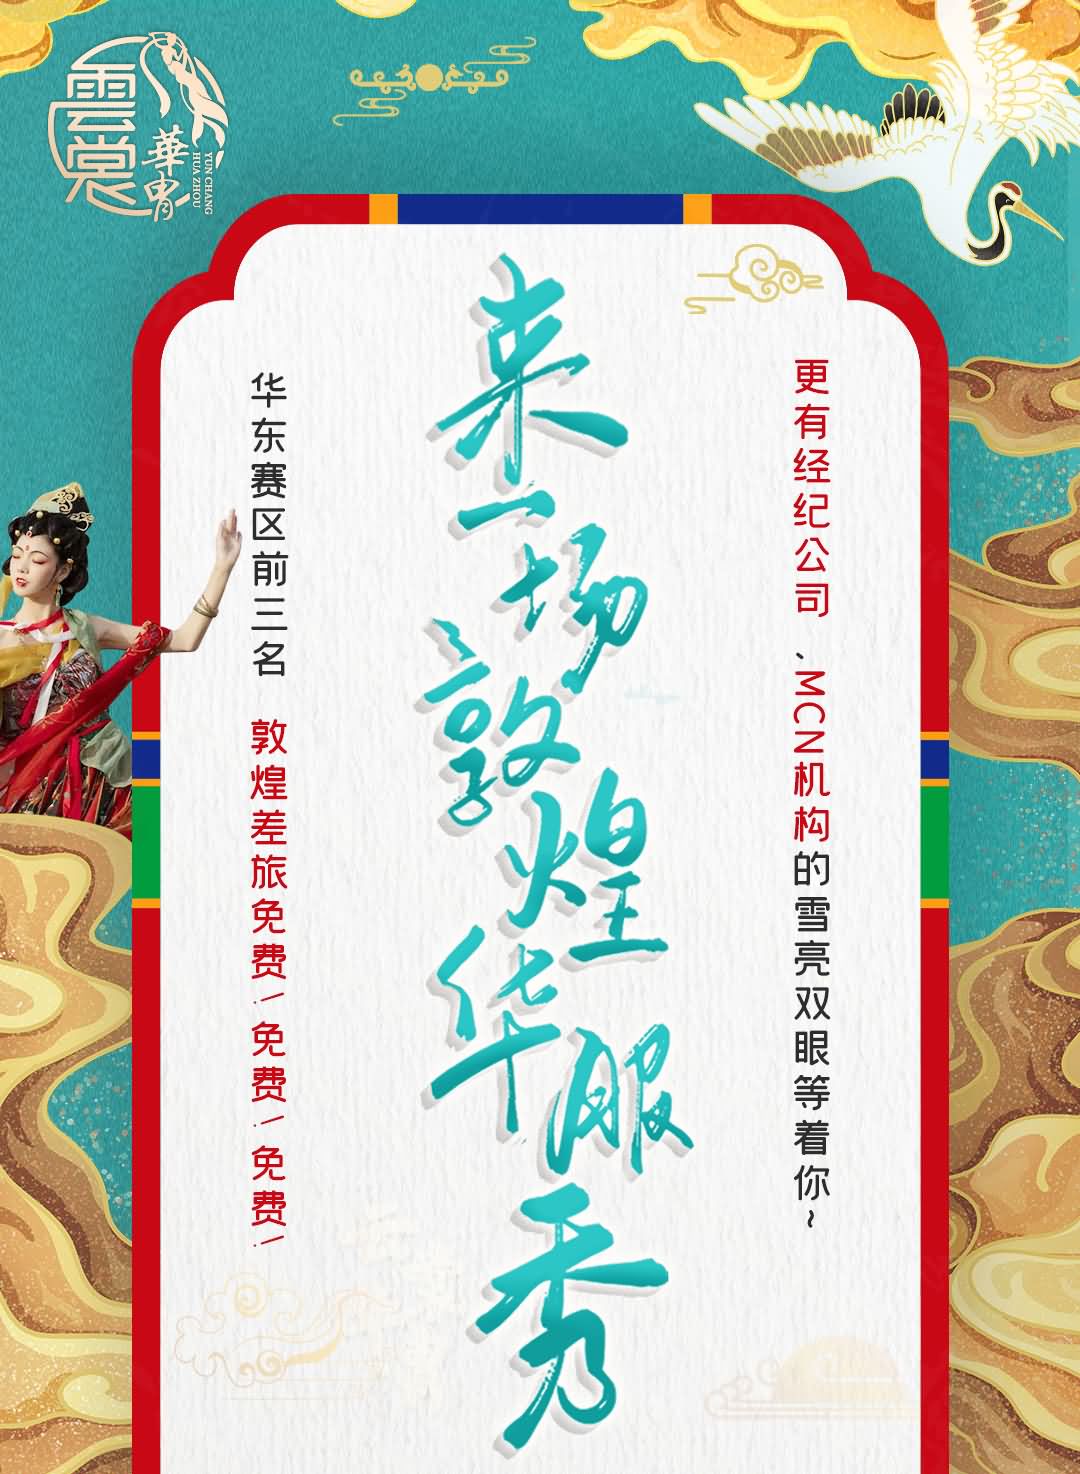 2021“云裳华胄”传统服饰文化大使上海赛区报名